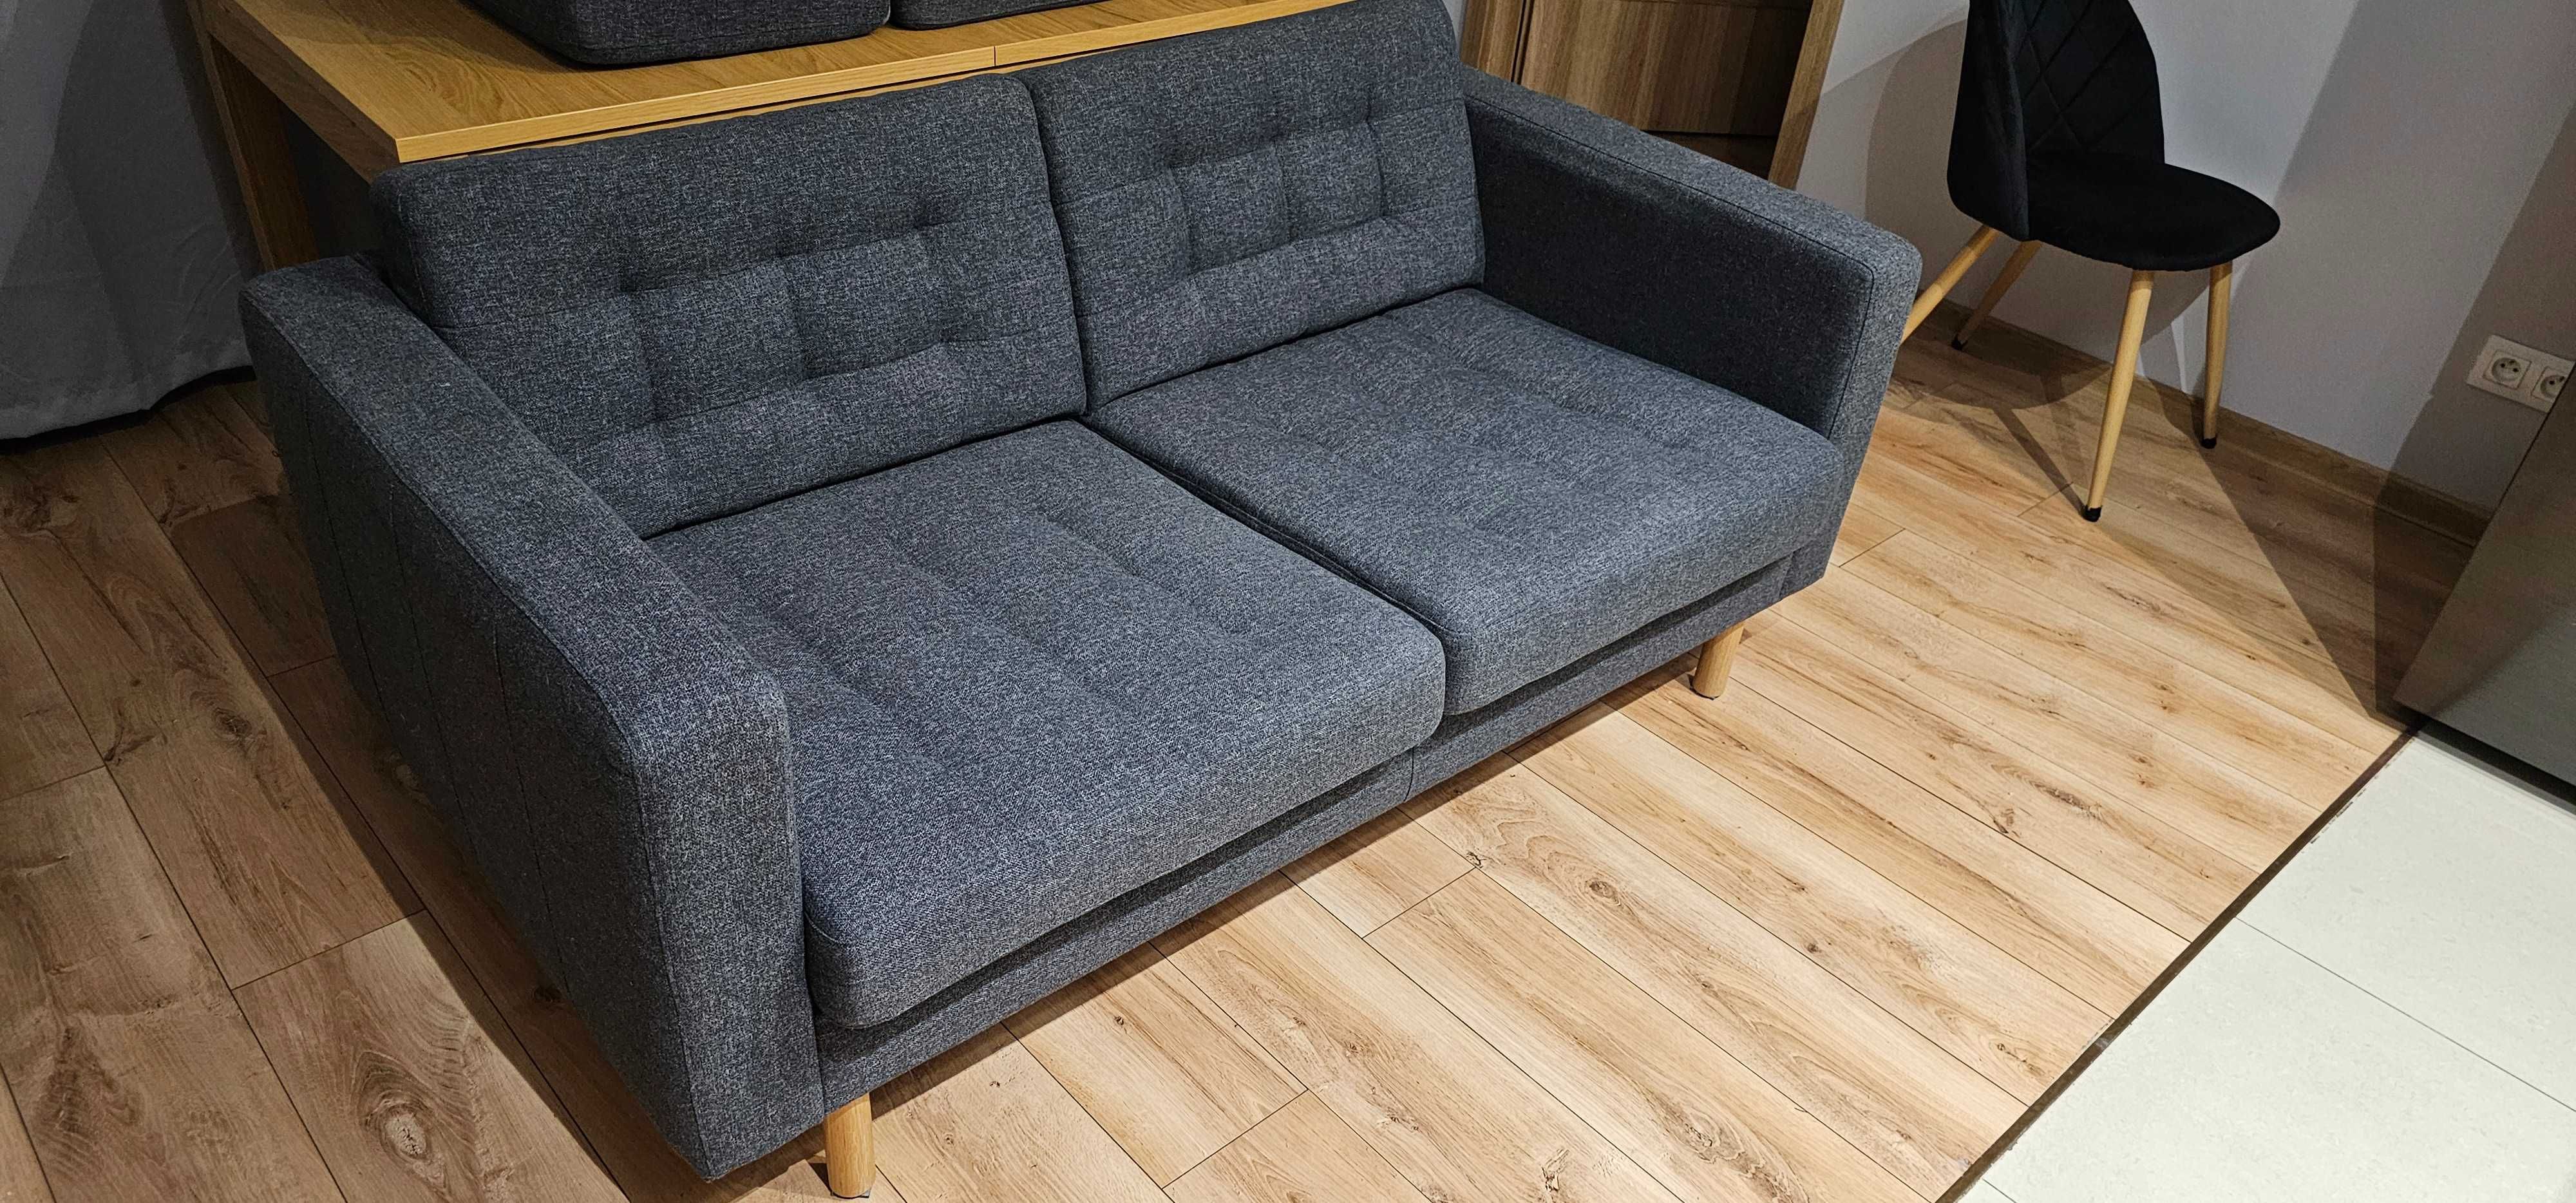 Sofa 2-osobowa PÄRUP, IKEA, kolor Gunnared ciemnoszary